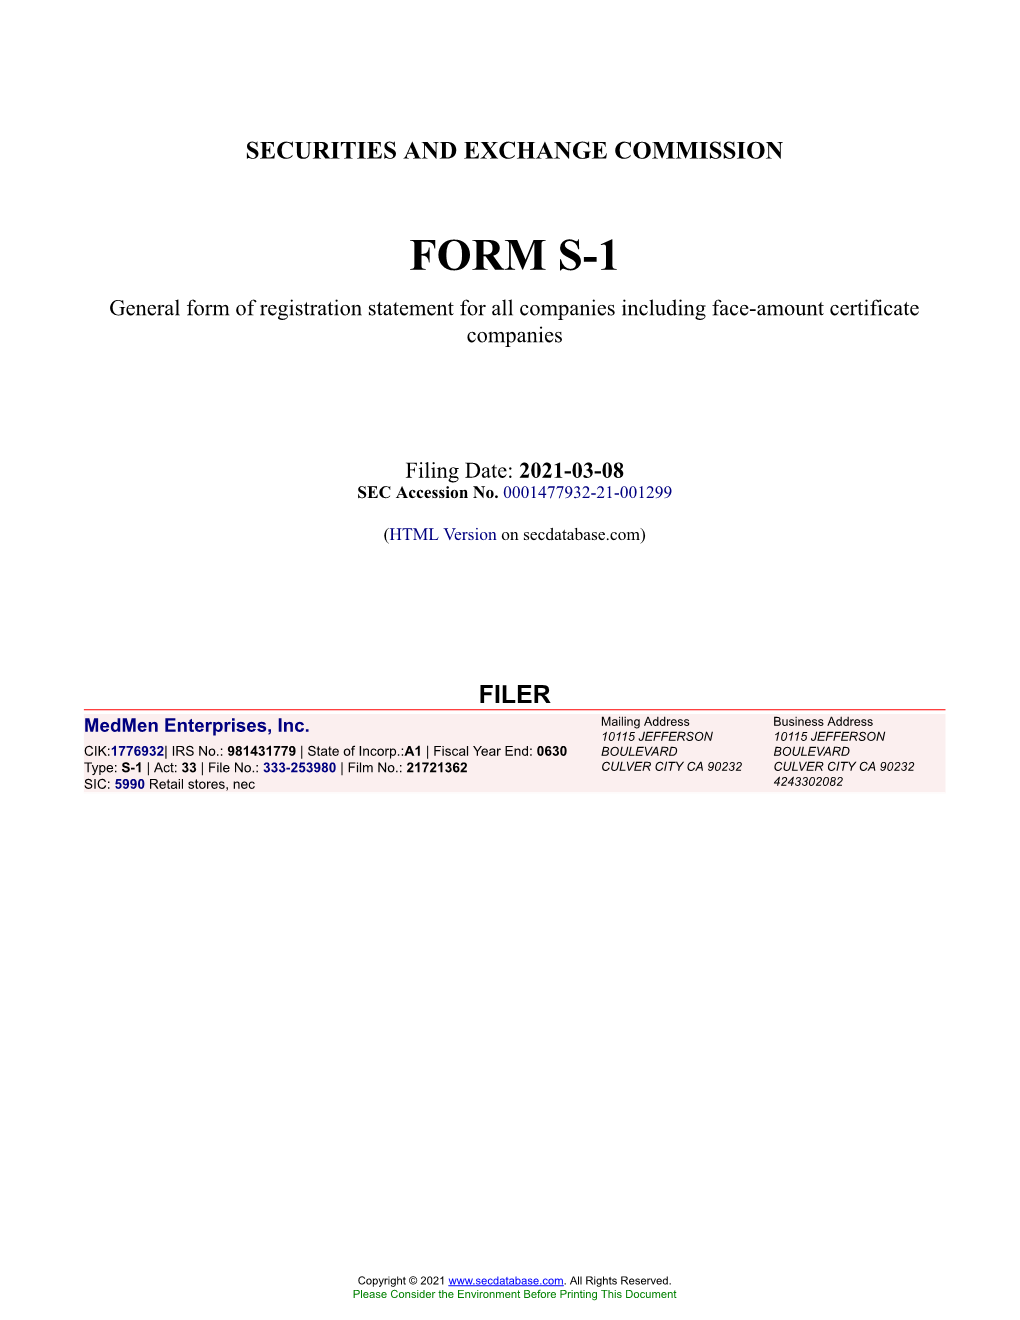 Medmen Enterprises, Inc. Form S-1 Filed 2021-03-08